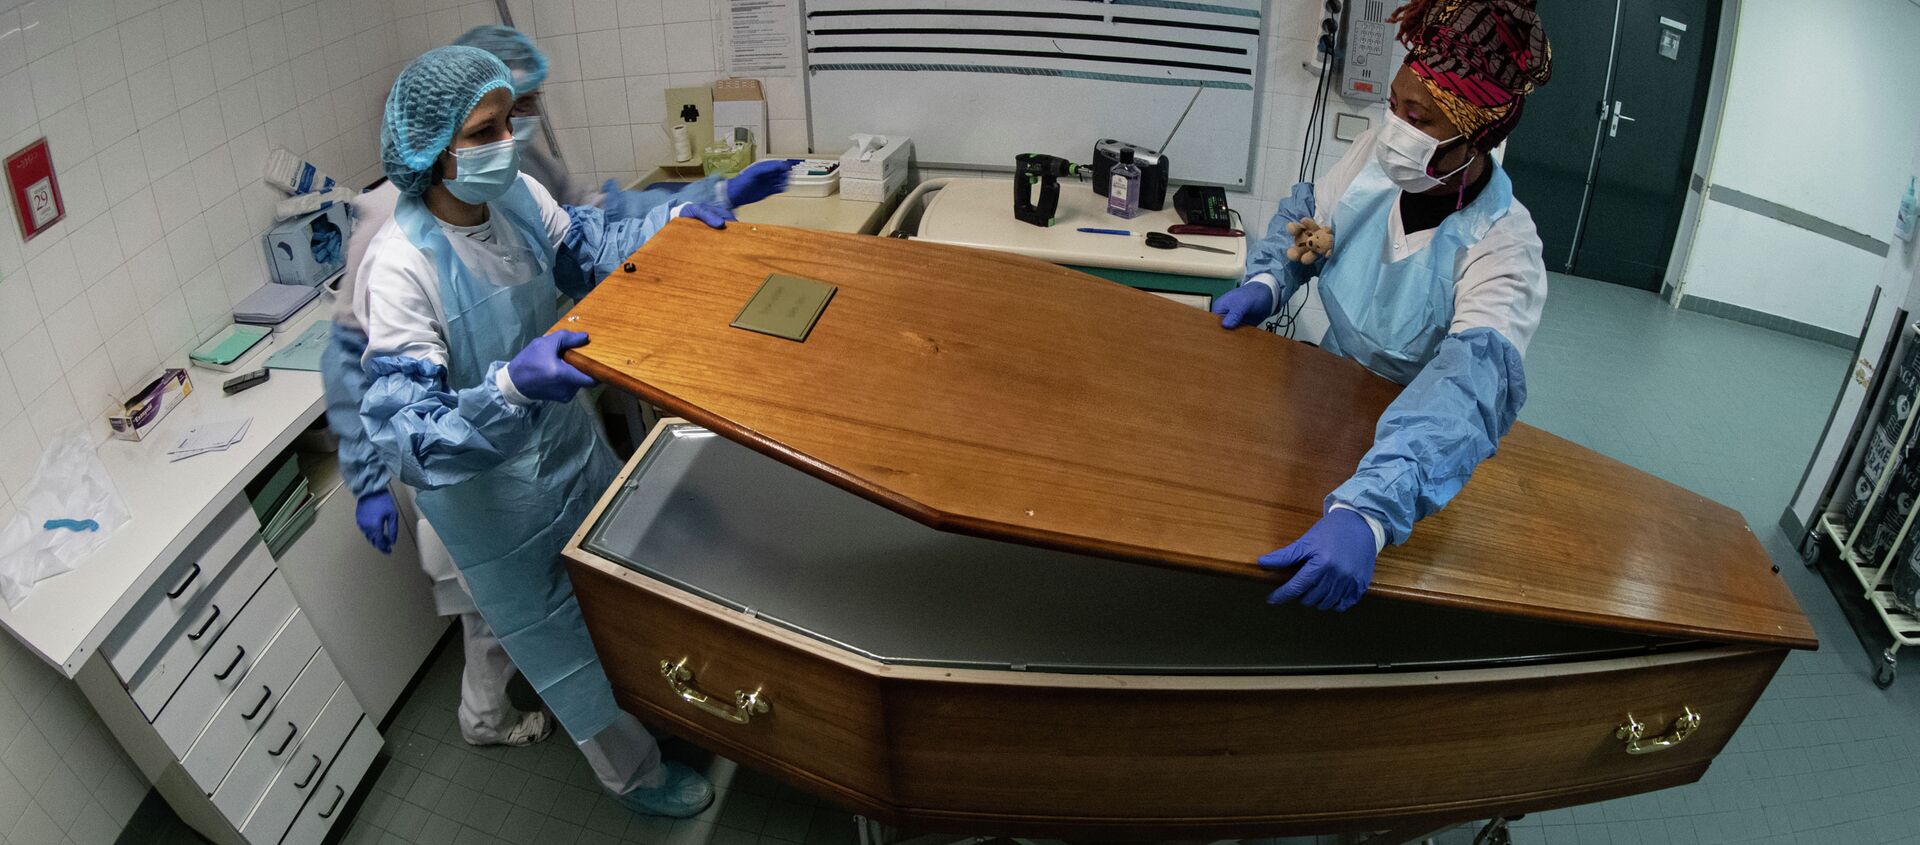 Медицинский персонал закрывает гроб с телом пациента, умершего от Covid-19, в морге больницы - Sputnik Кыргызстан, 1920, 04.02.2021